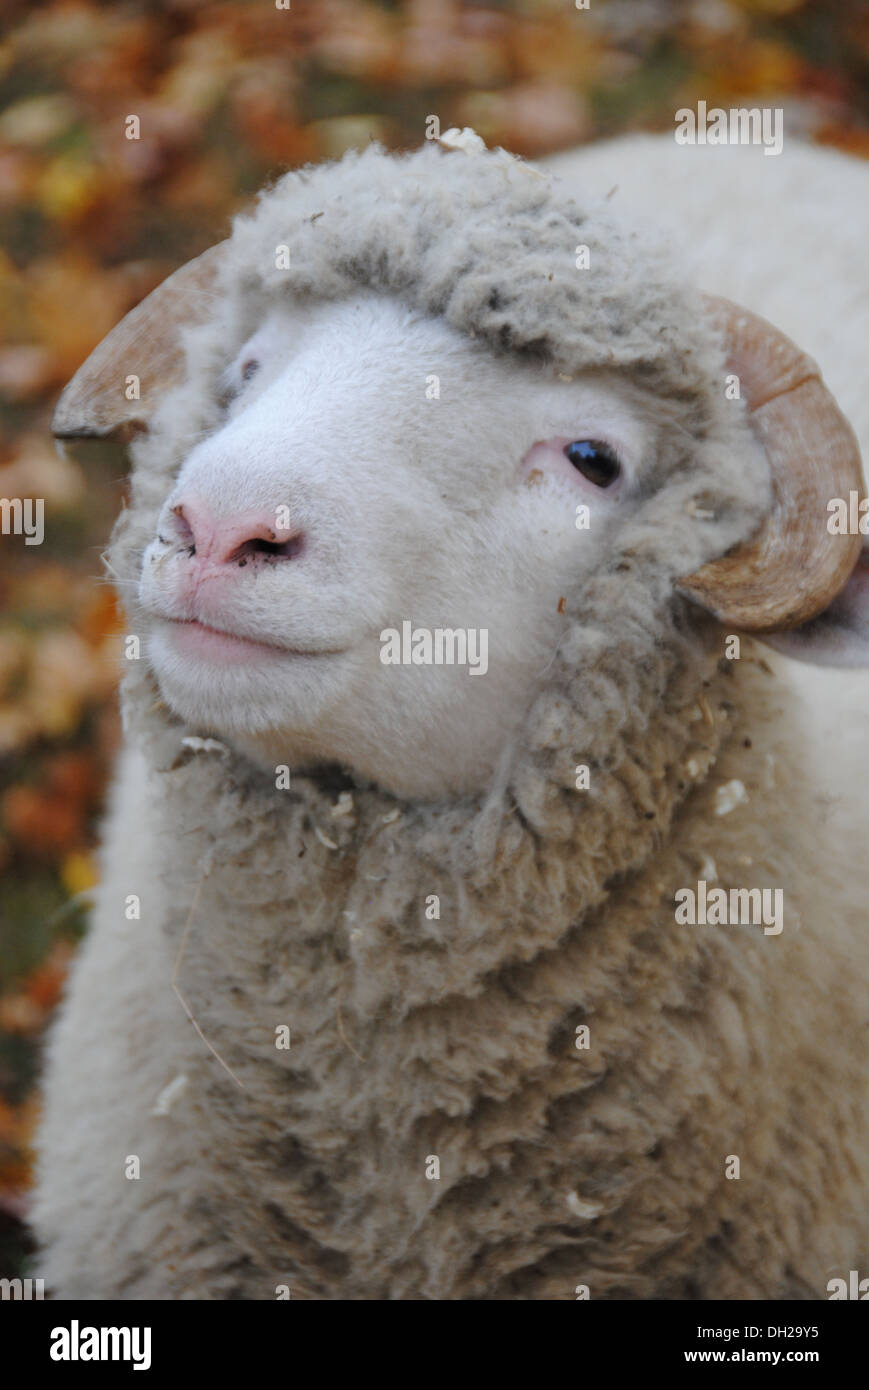 Primer plano de ovejas de lana mirando al margen -- ¿qué está diciendo? "Soy lindo" Foto de stock